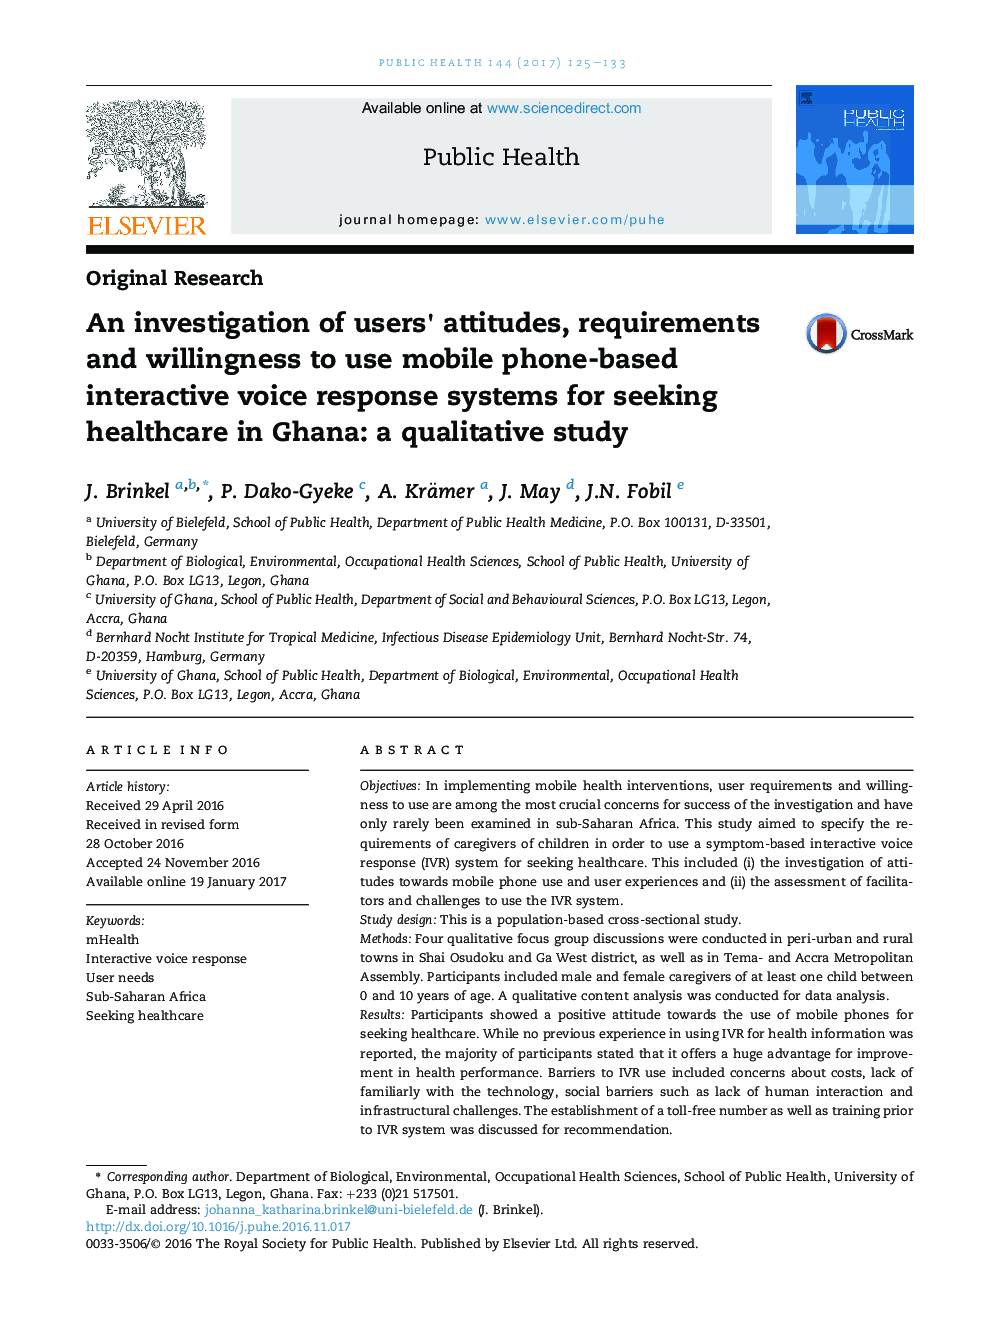 بررسی نگرش کاربران، الزامات و تمایل به استفاده از سیستم های پاسخ صوتی تعاملی مبتنی بر تلفن همراه برای جستجوی مراقبت های بهداشتی در غنا: یک مطالعه کیفی 